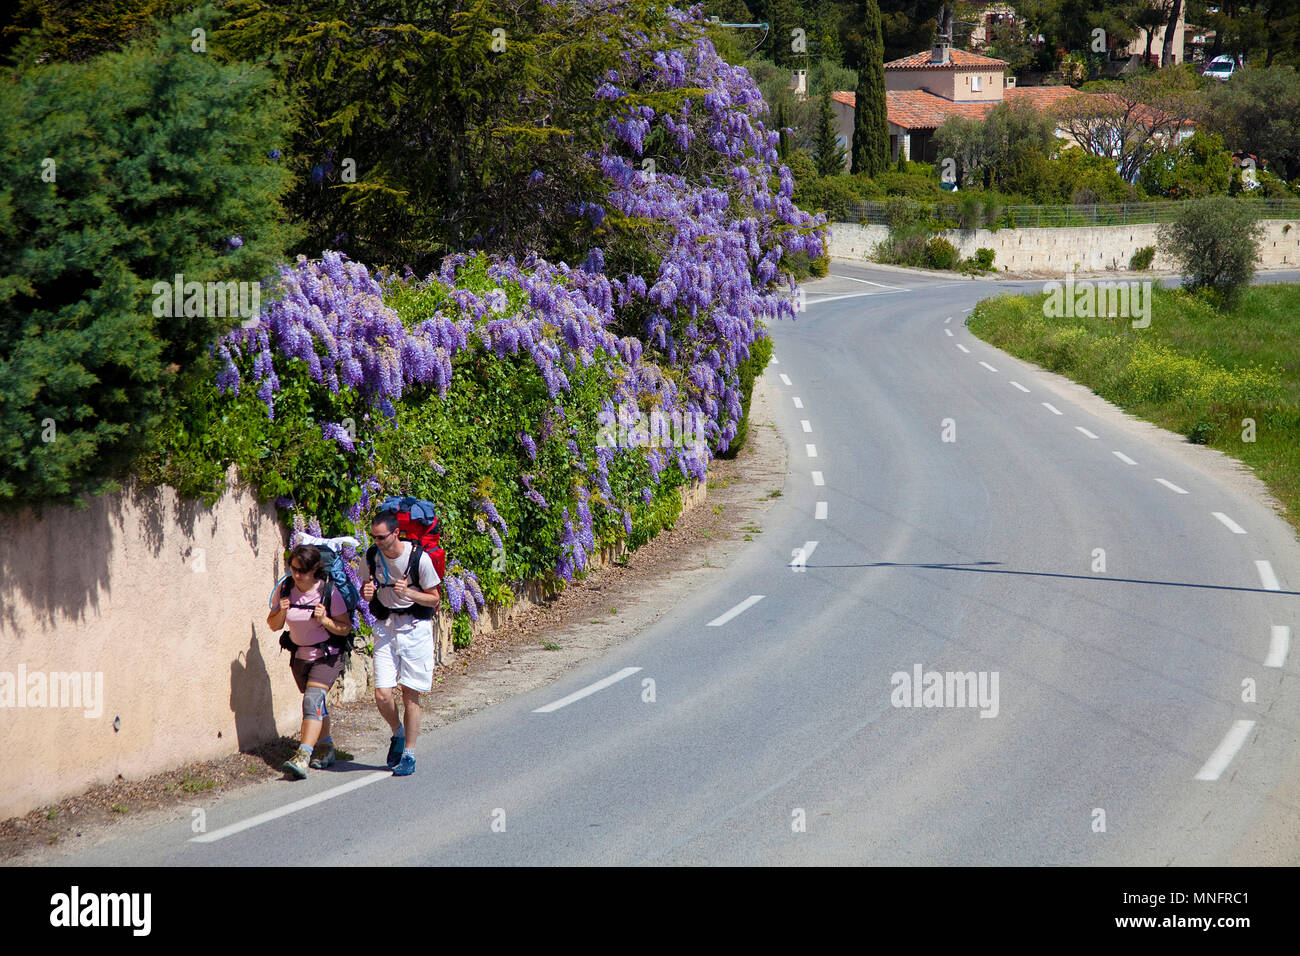 Two backpacker leaving the village La Cadiere d'Azur, Département Var, Provence-Alpes-Côte d’Azur, South France, France, Europe Stock Photo